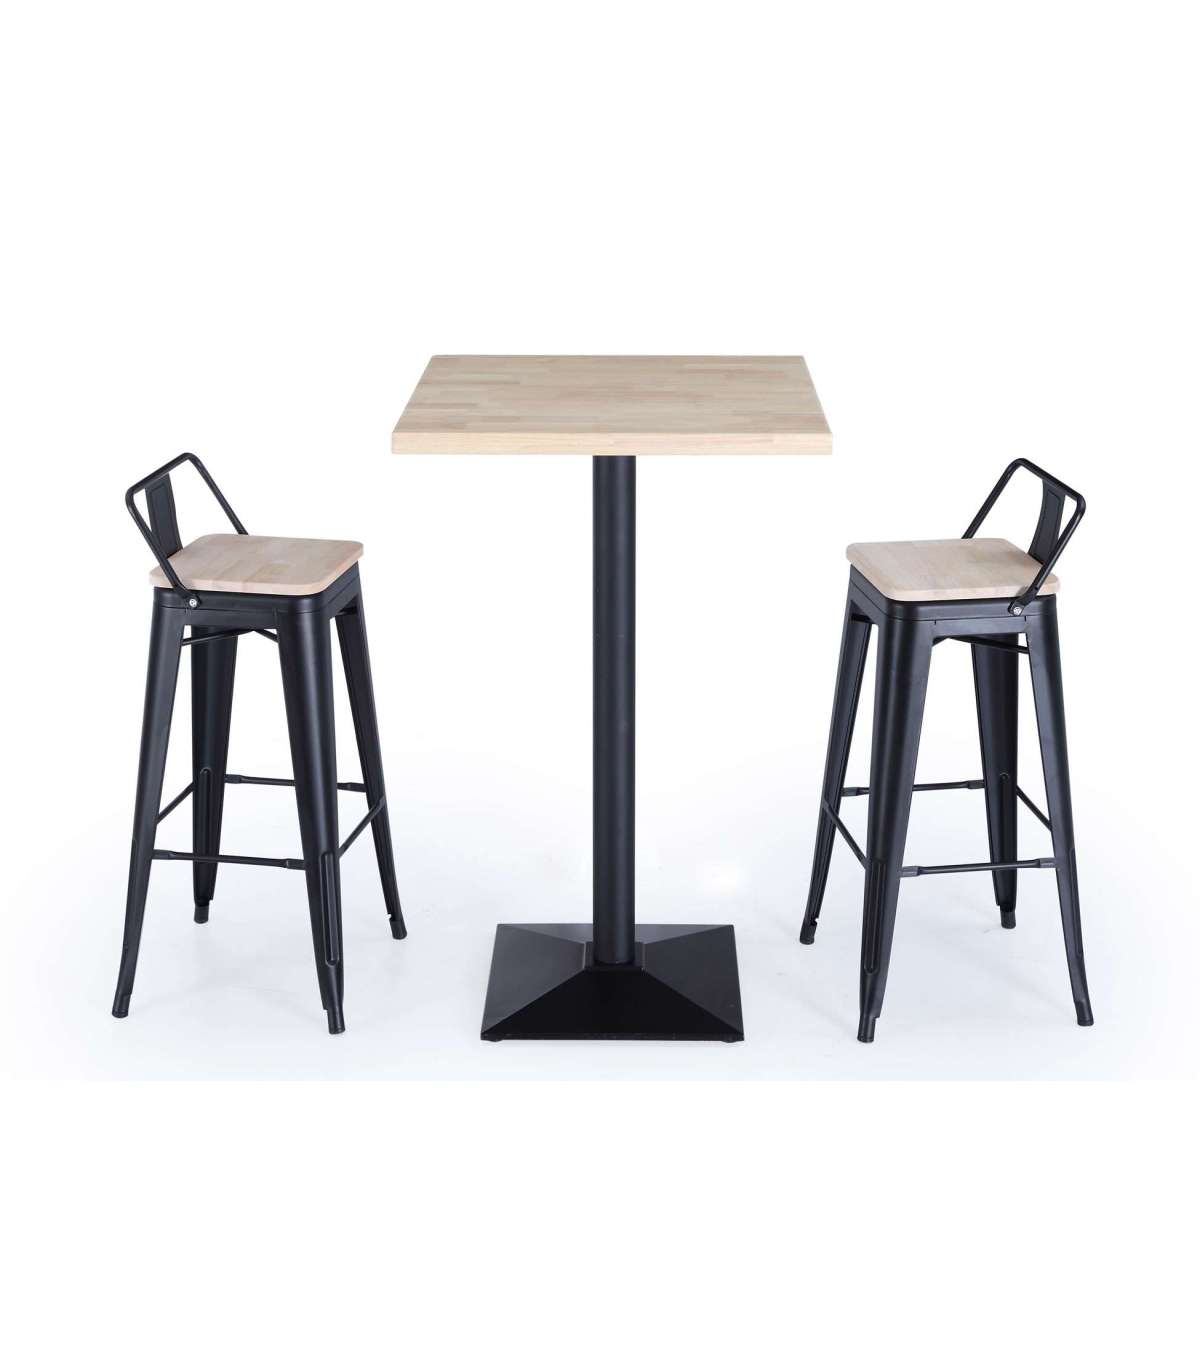 Conjunto industrial 4 taburetes tolix mesa bar 60 x 60 cm madera